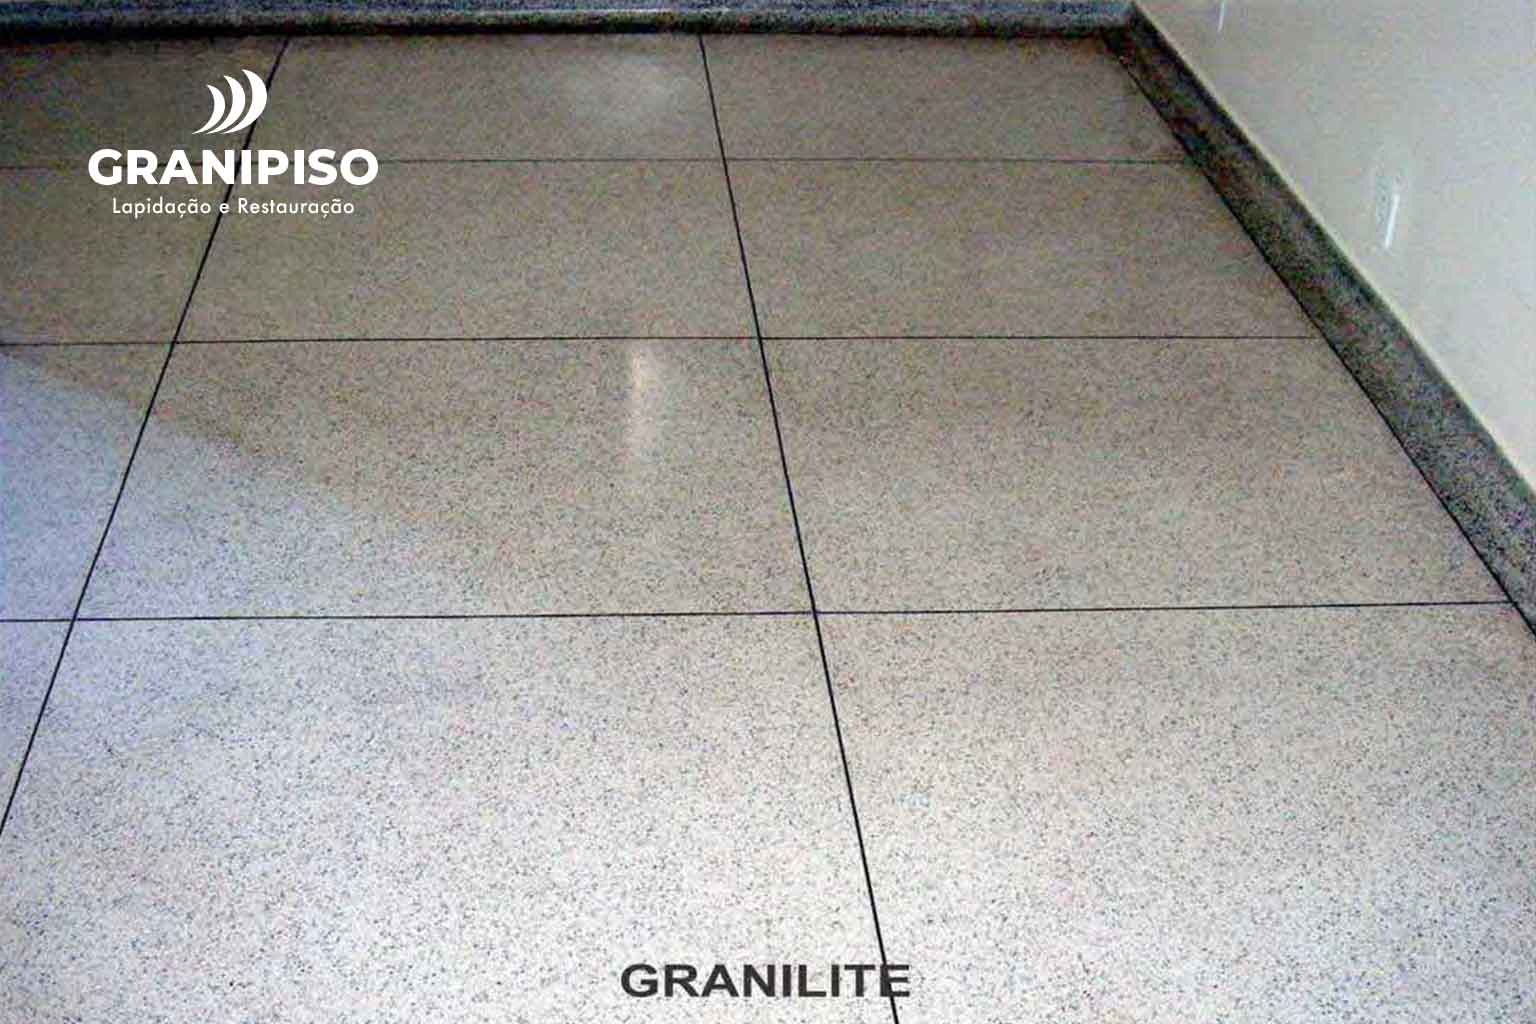 piso-granilite-escola-joao-de-almeida-granipiso-02